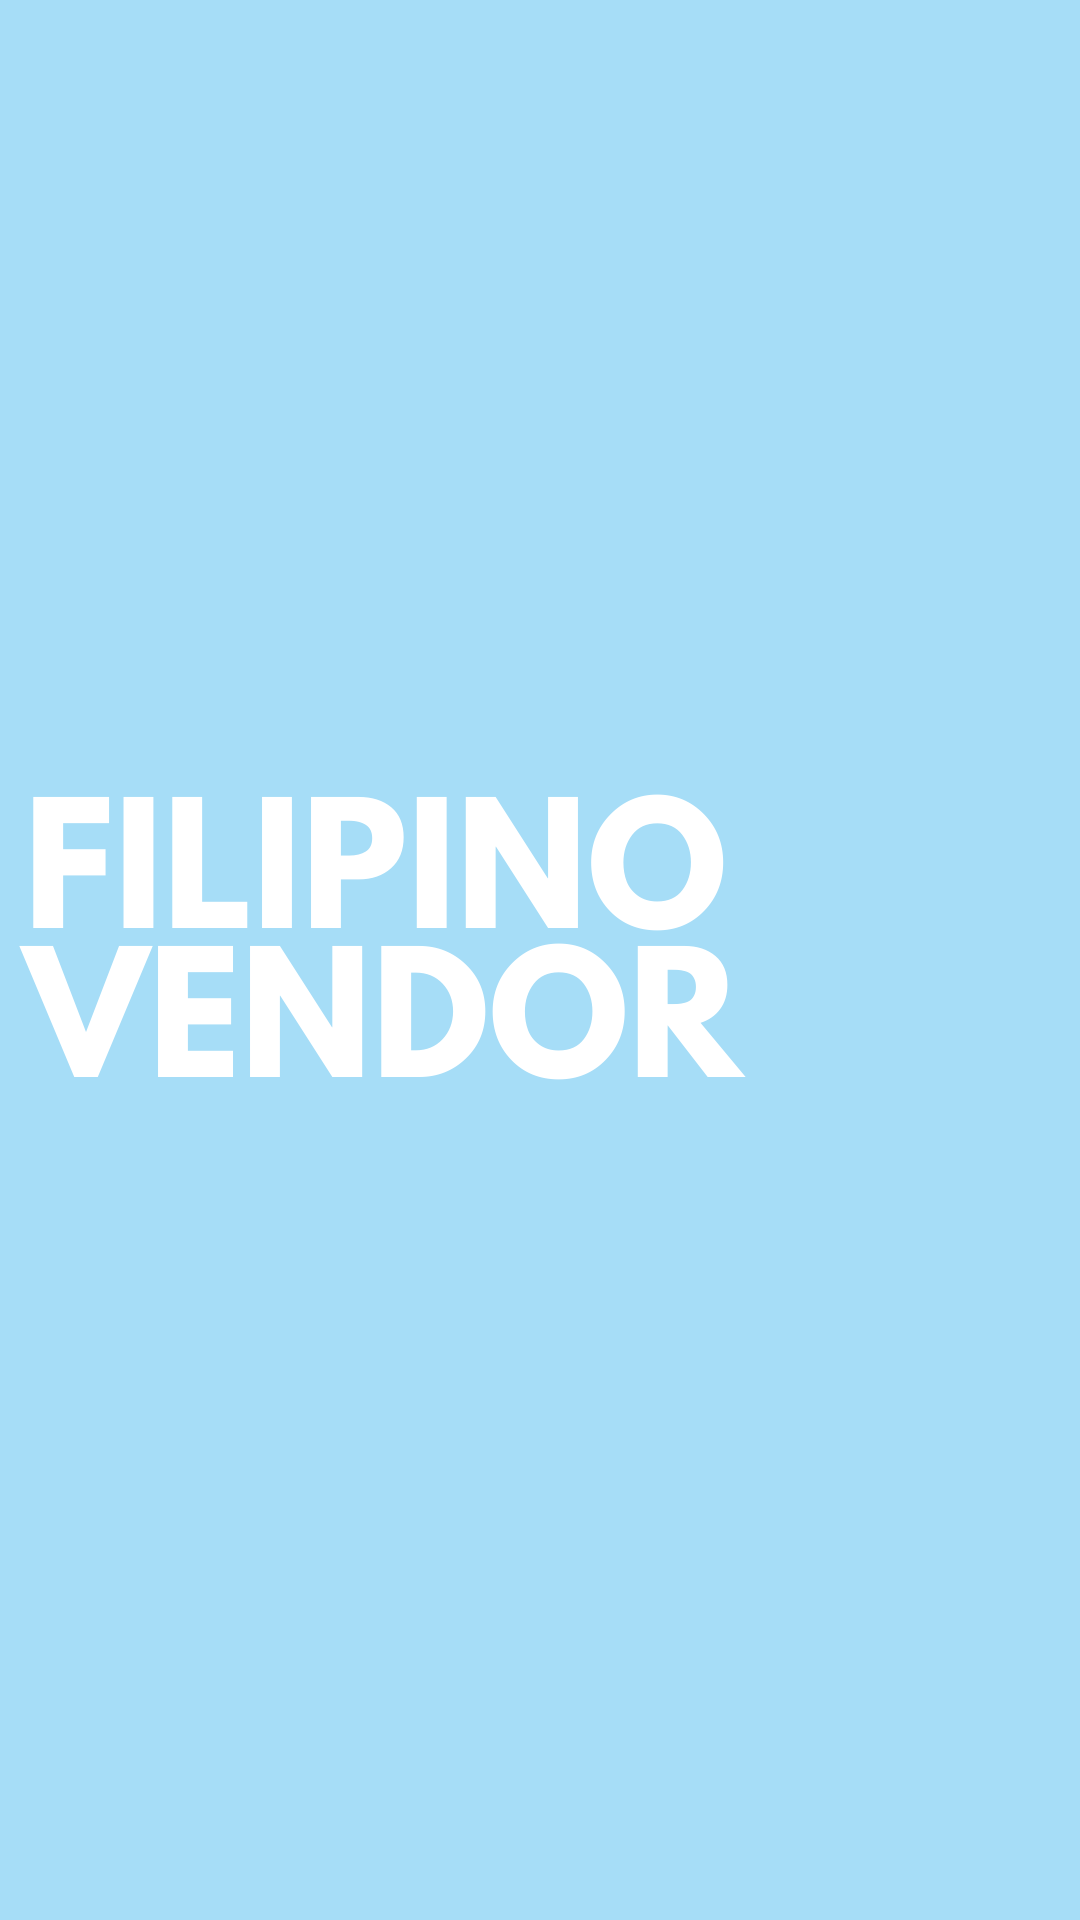 Filipino Vendor